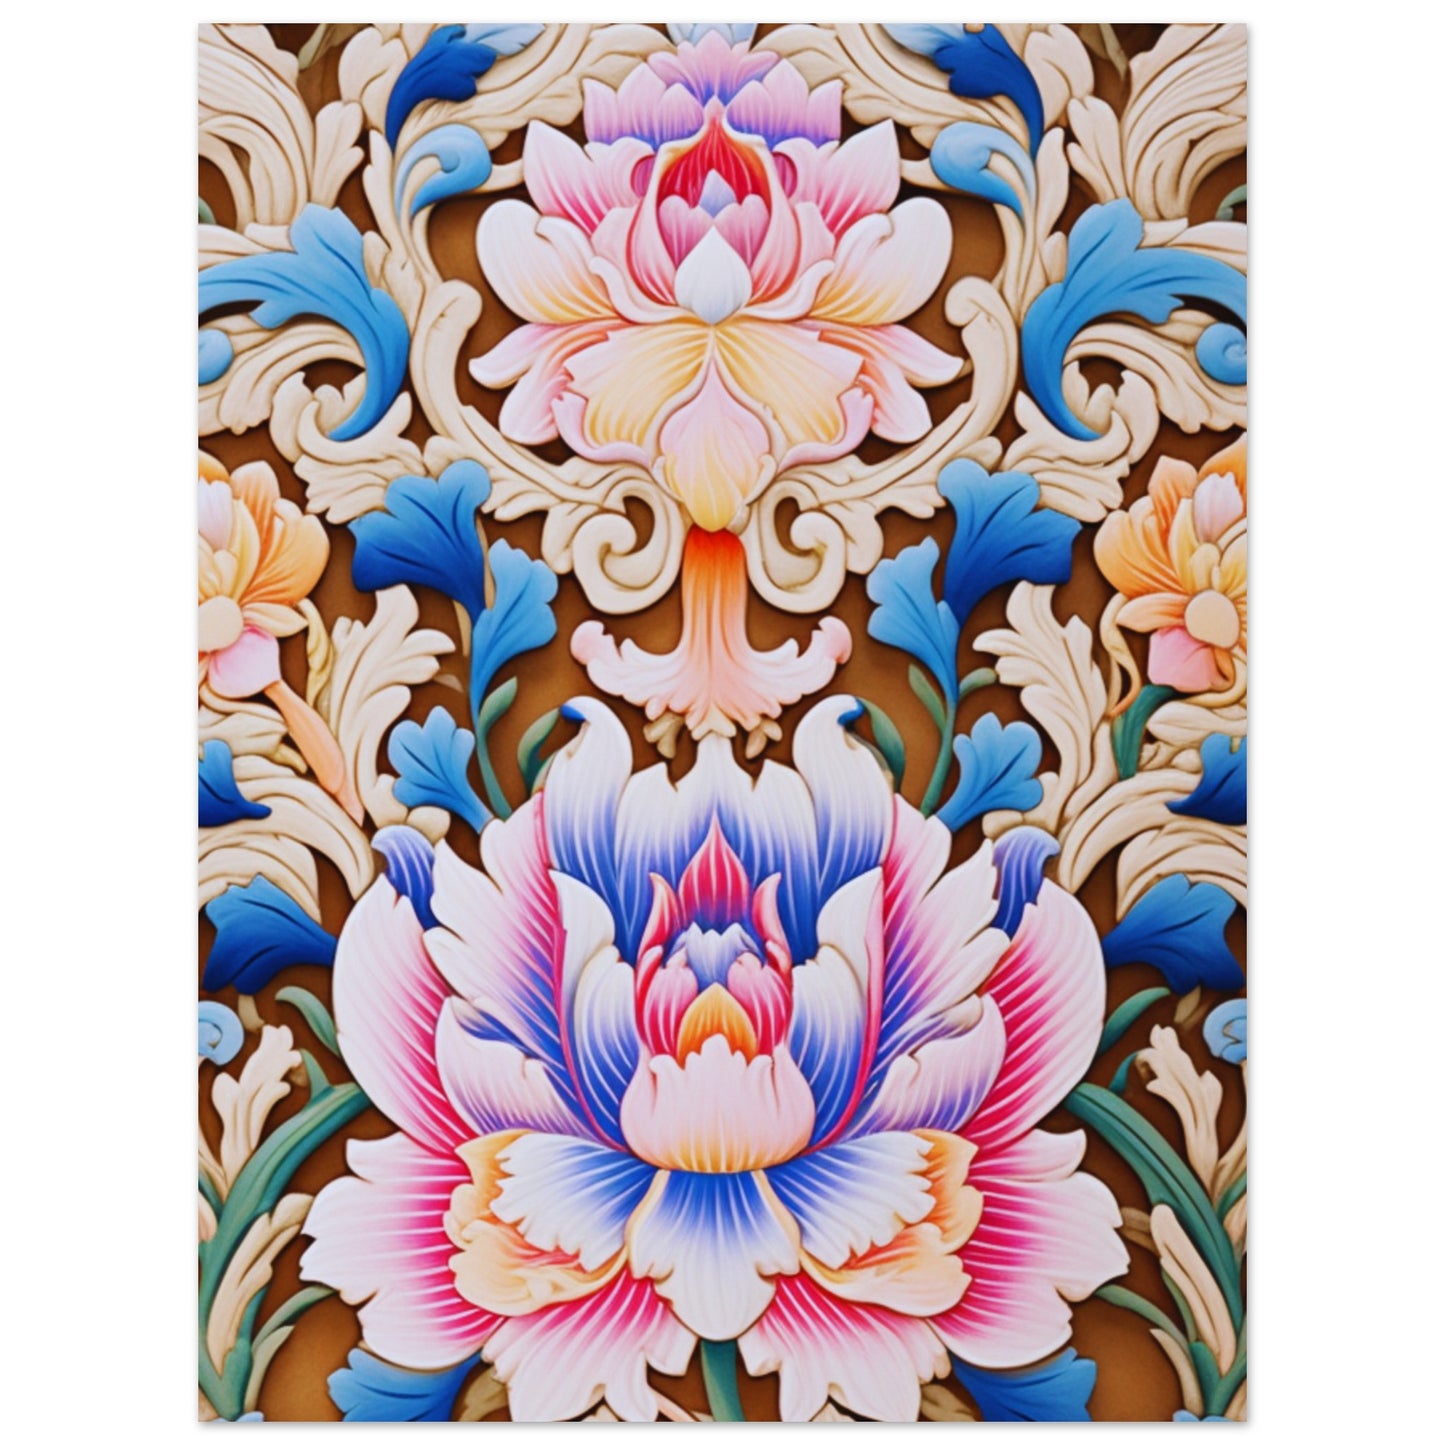 Flowers | Original Art Print | Premium Matte Paper Poster